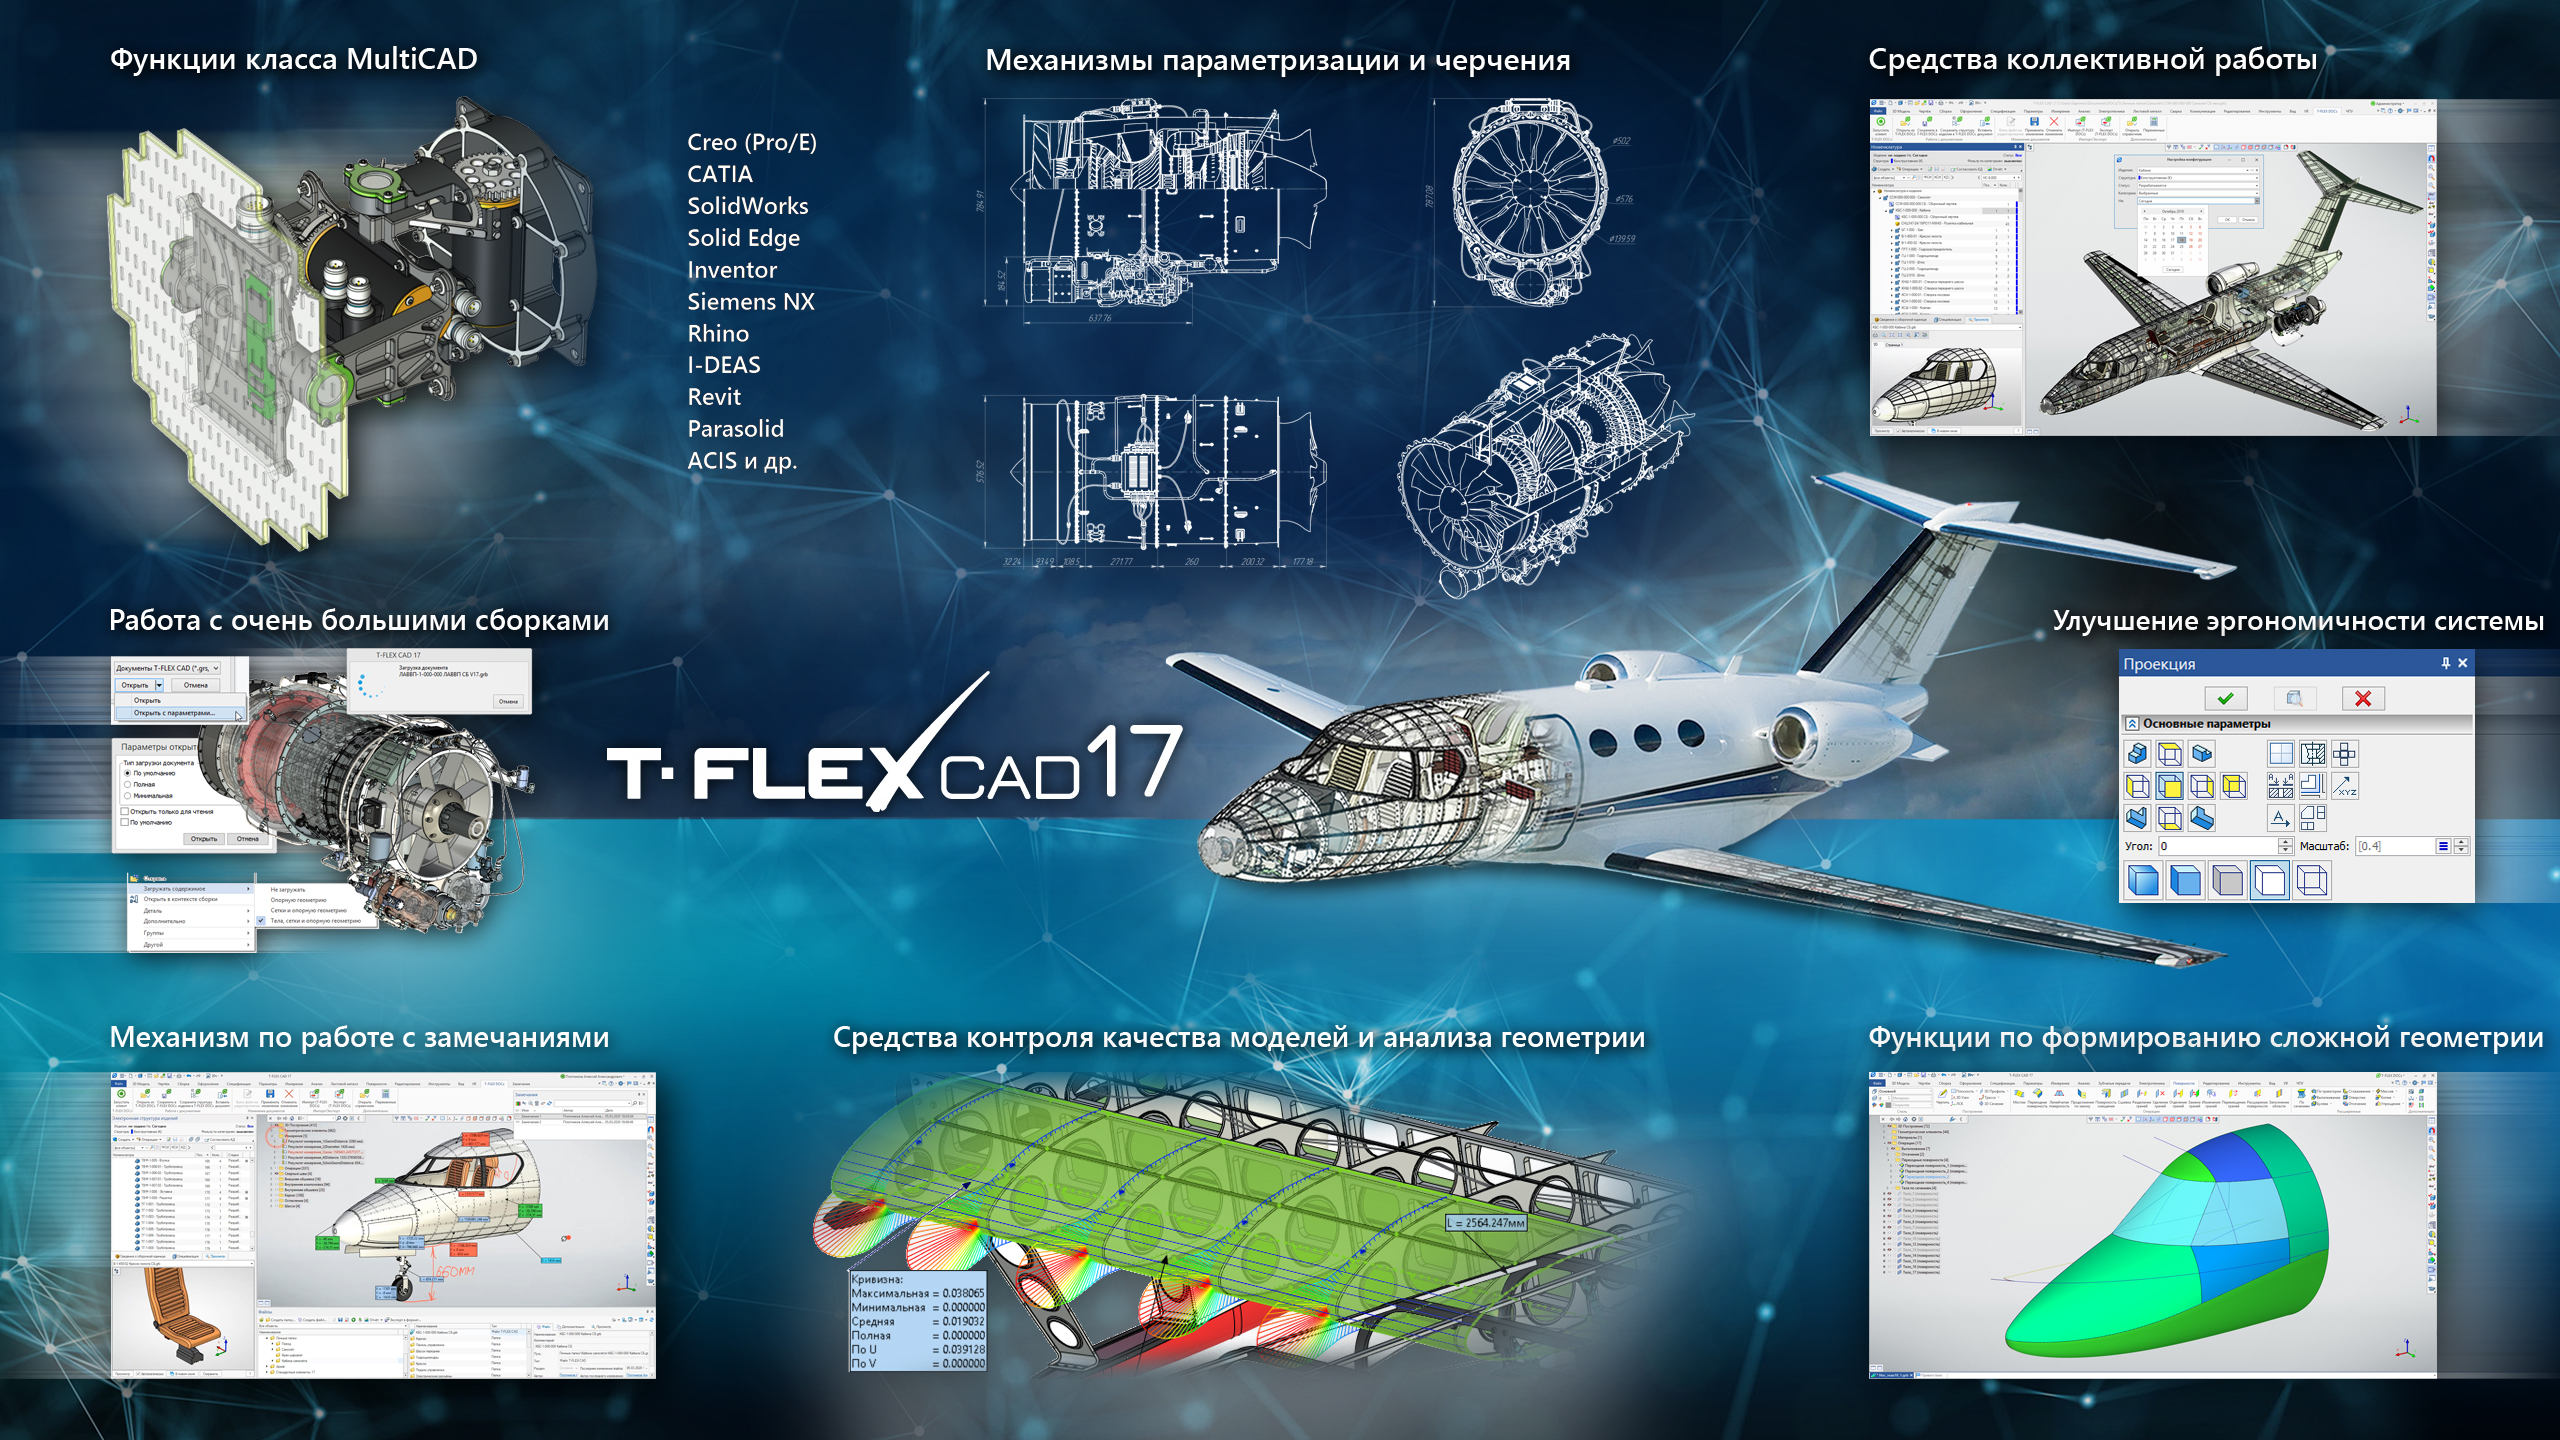 press-release T-FLEX CAD 17